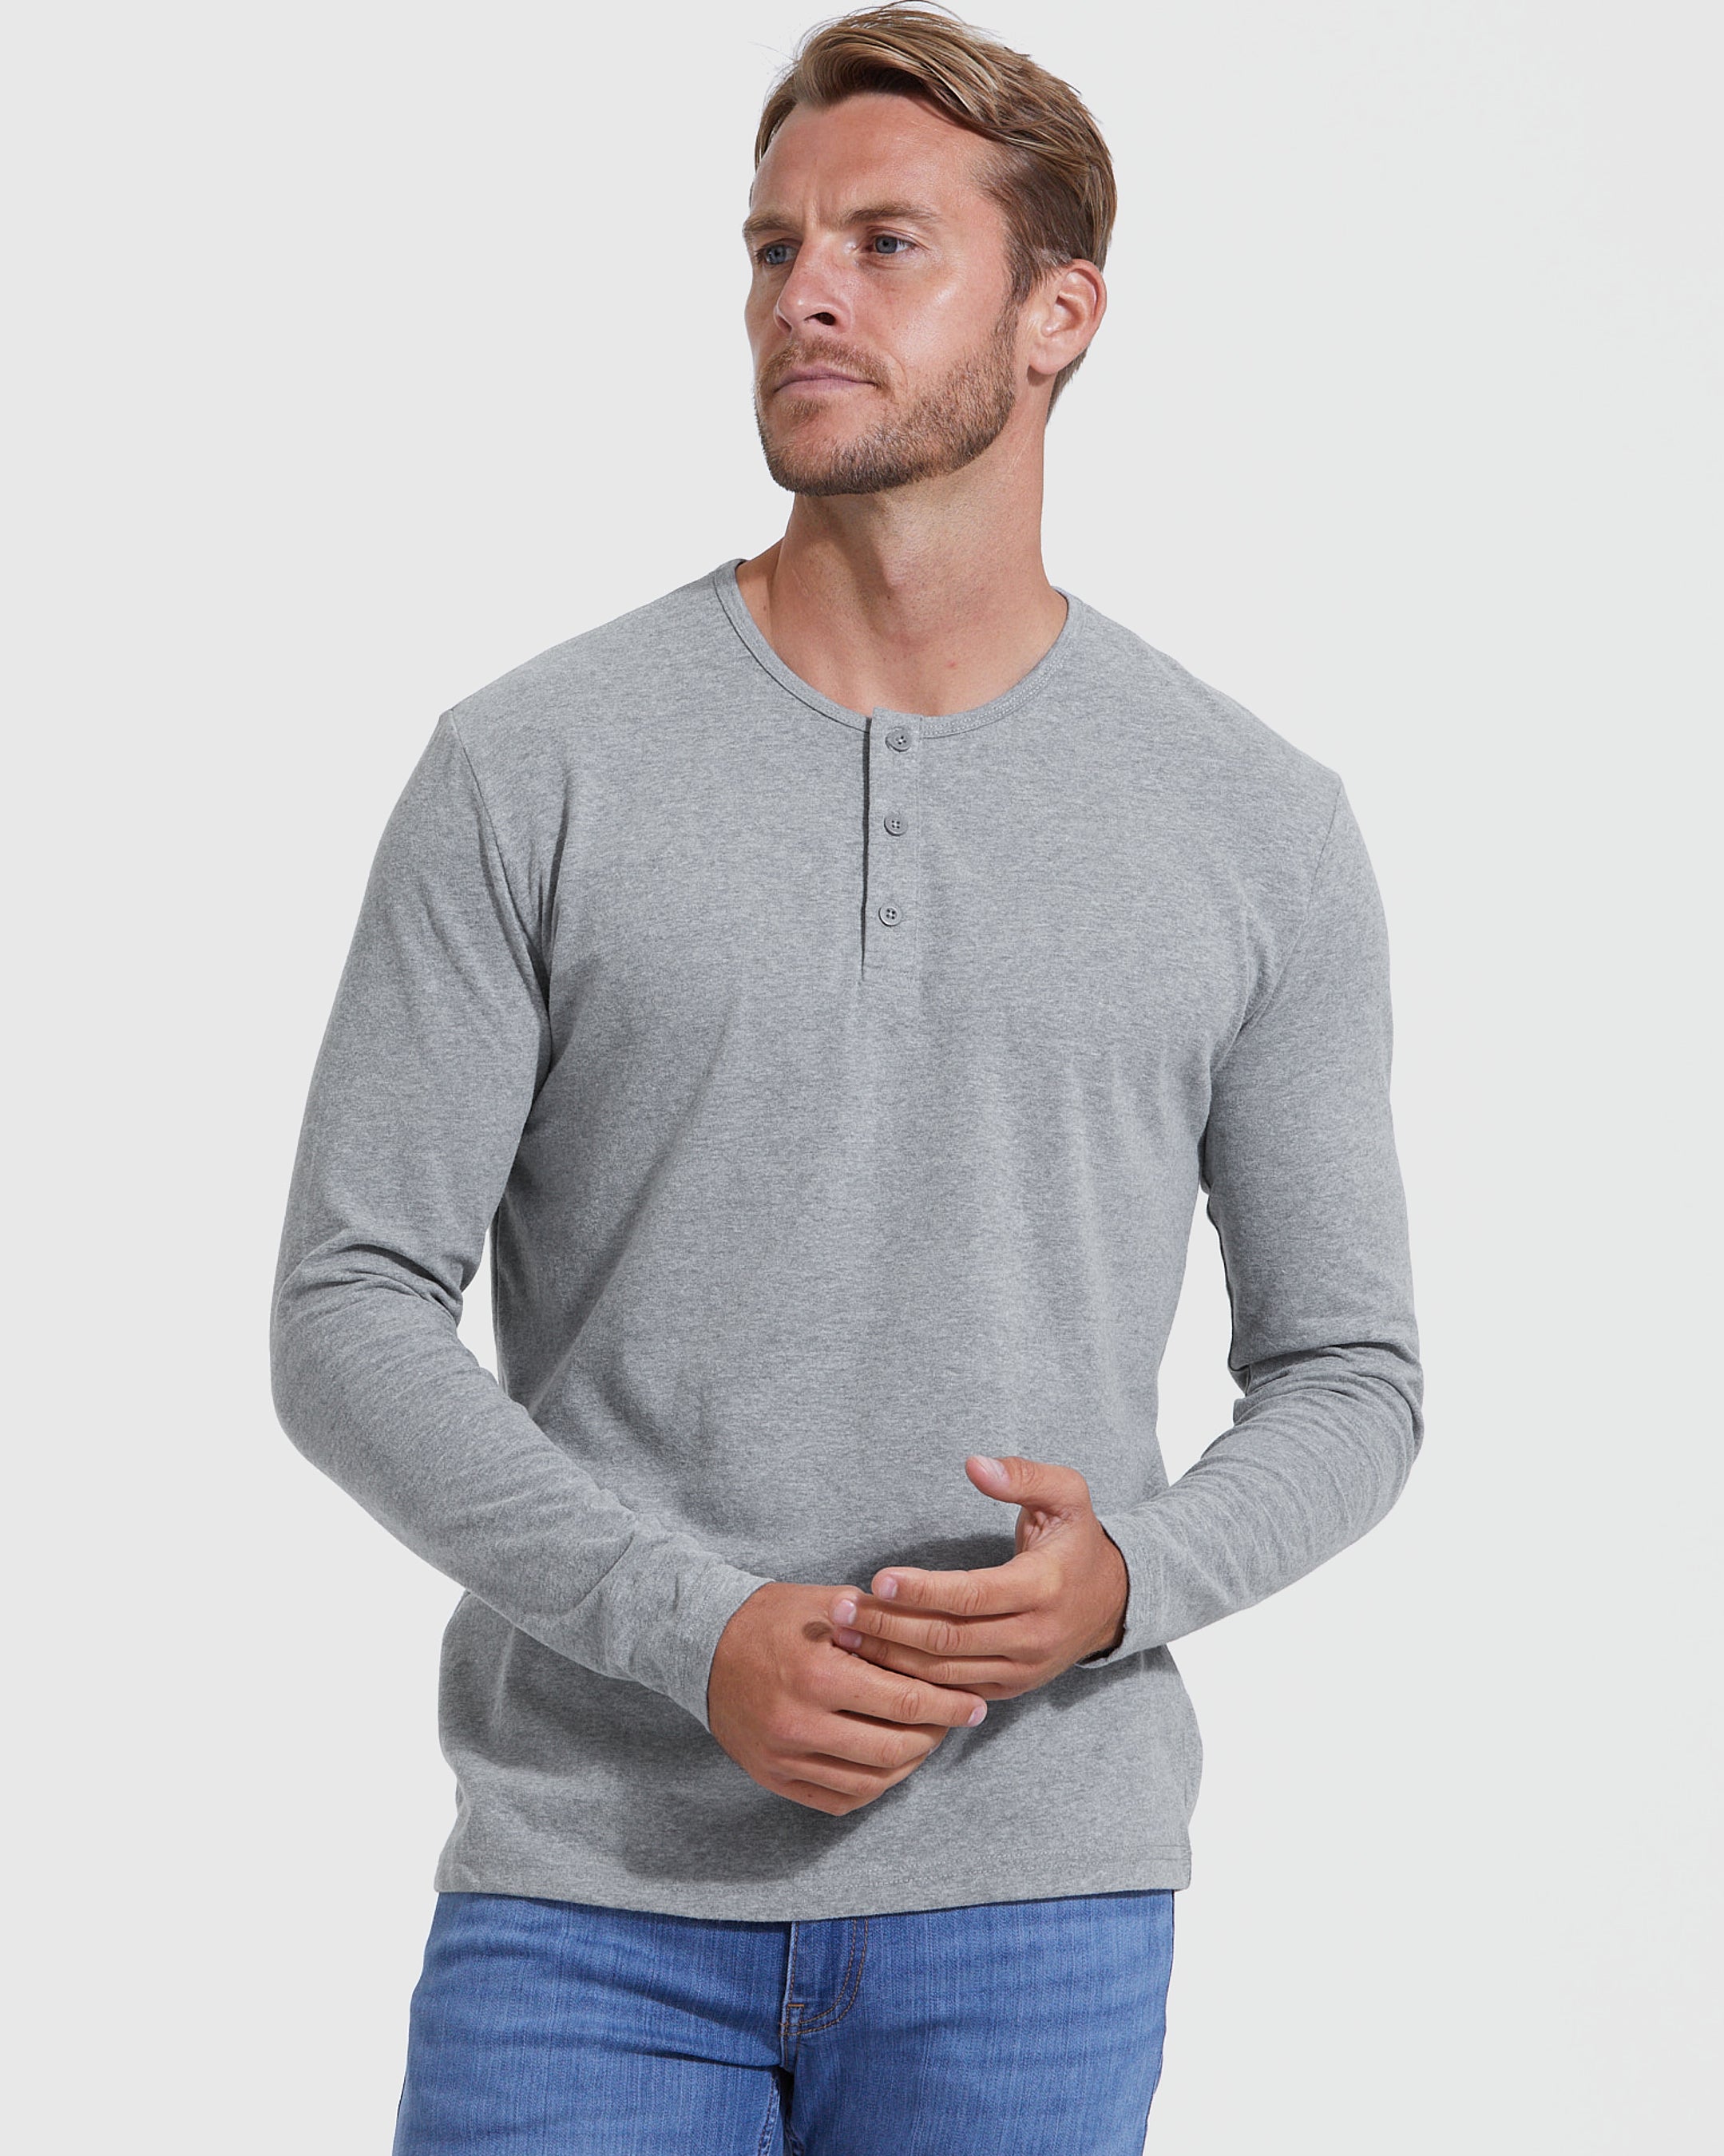 Men's Classic Long-Sleeve Henley Shirt